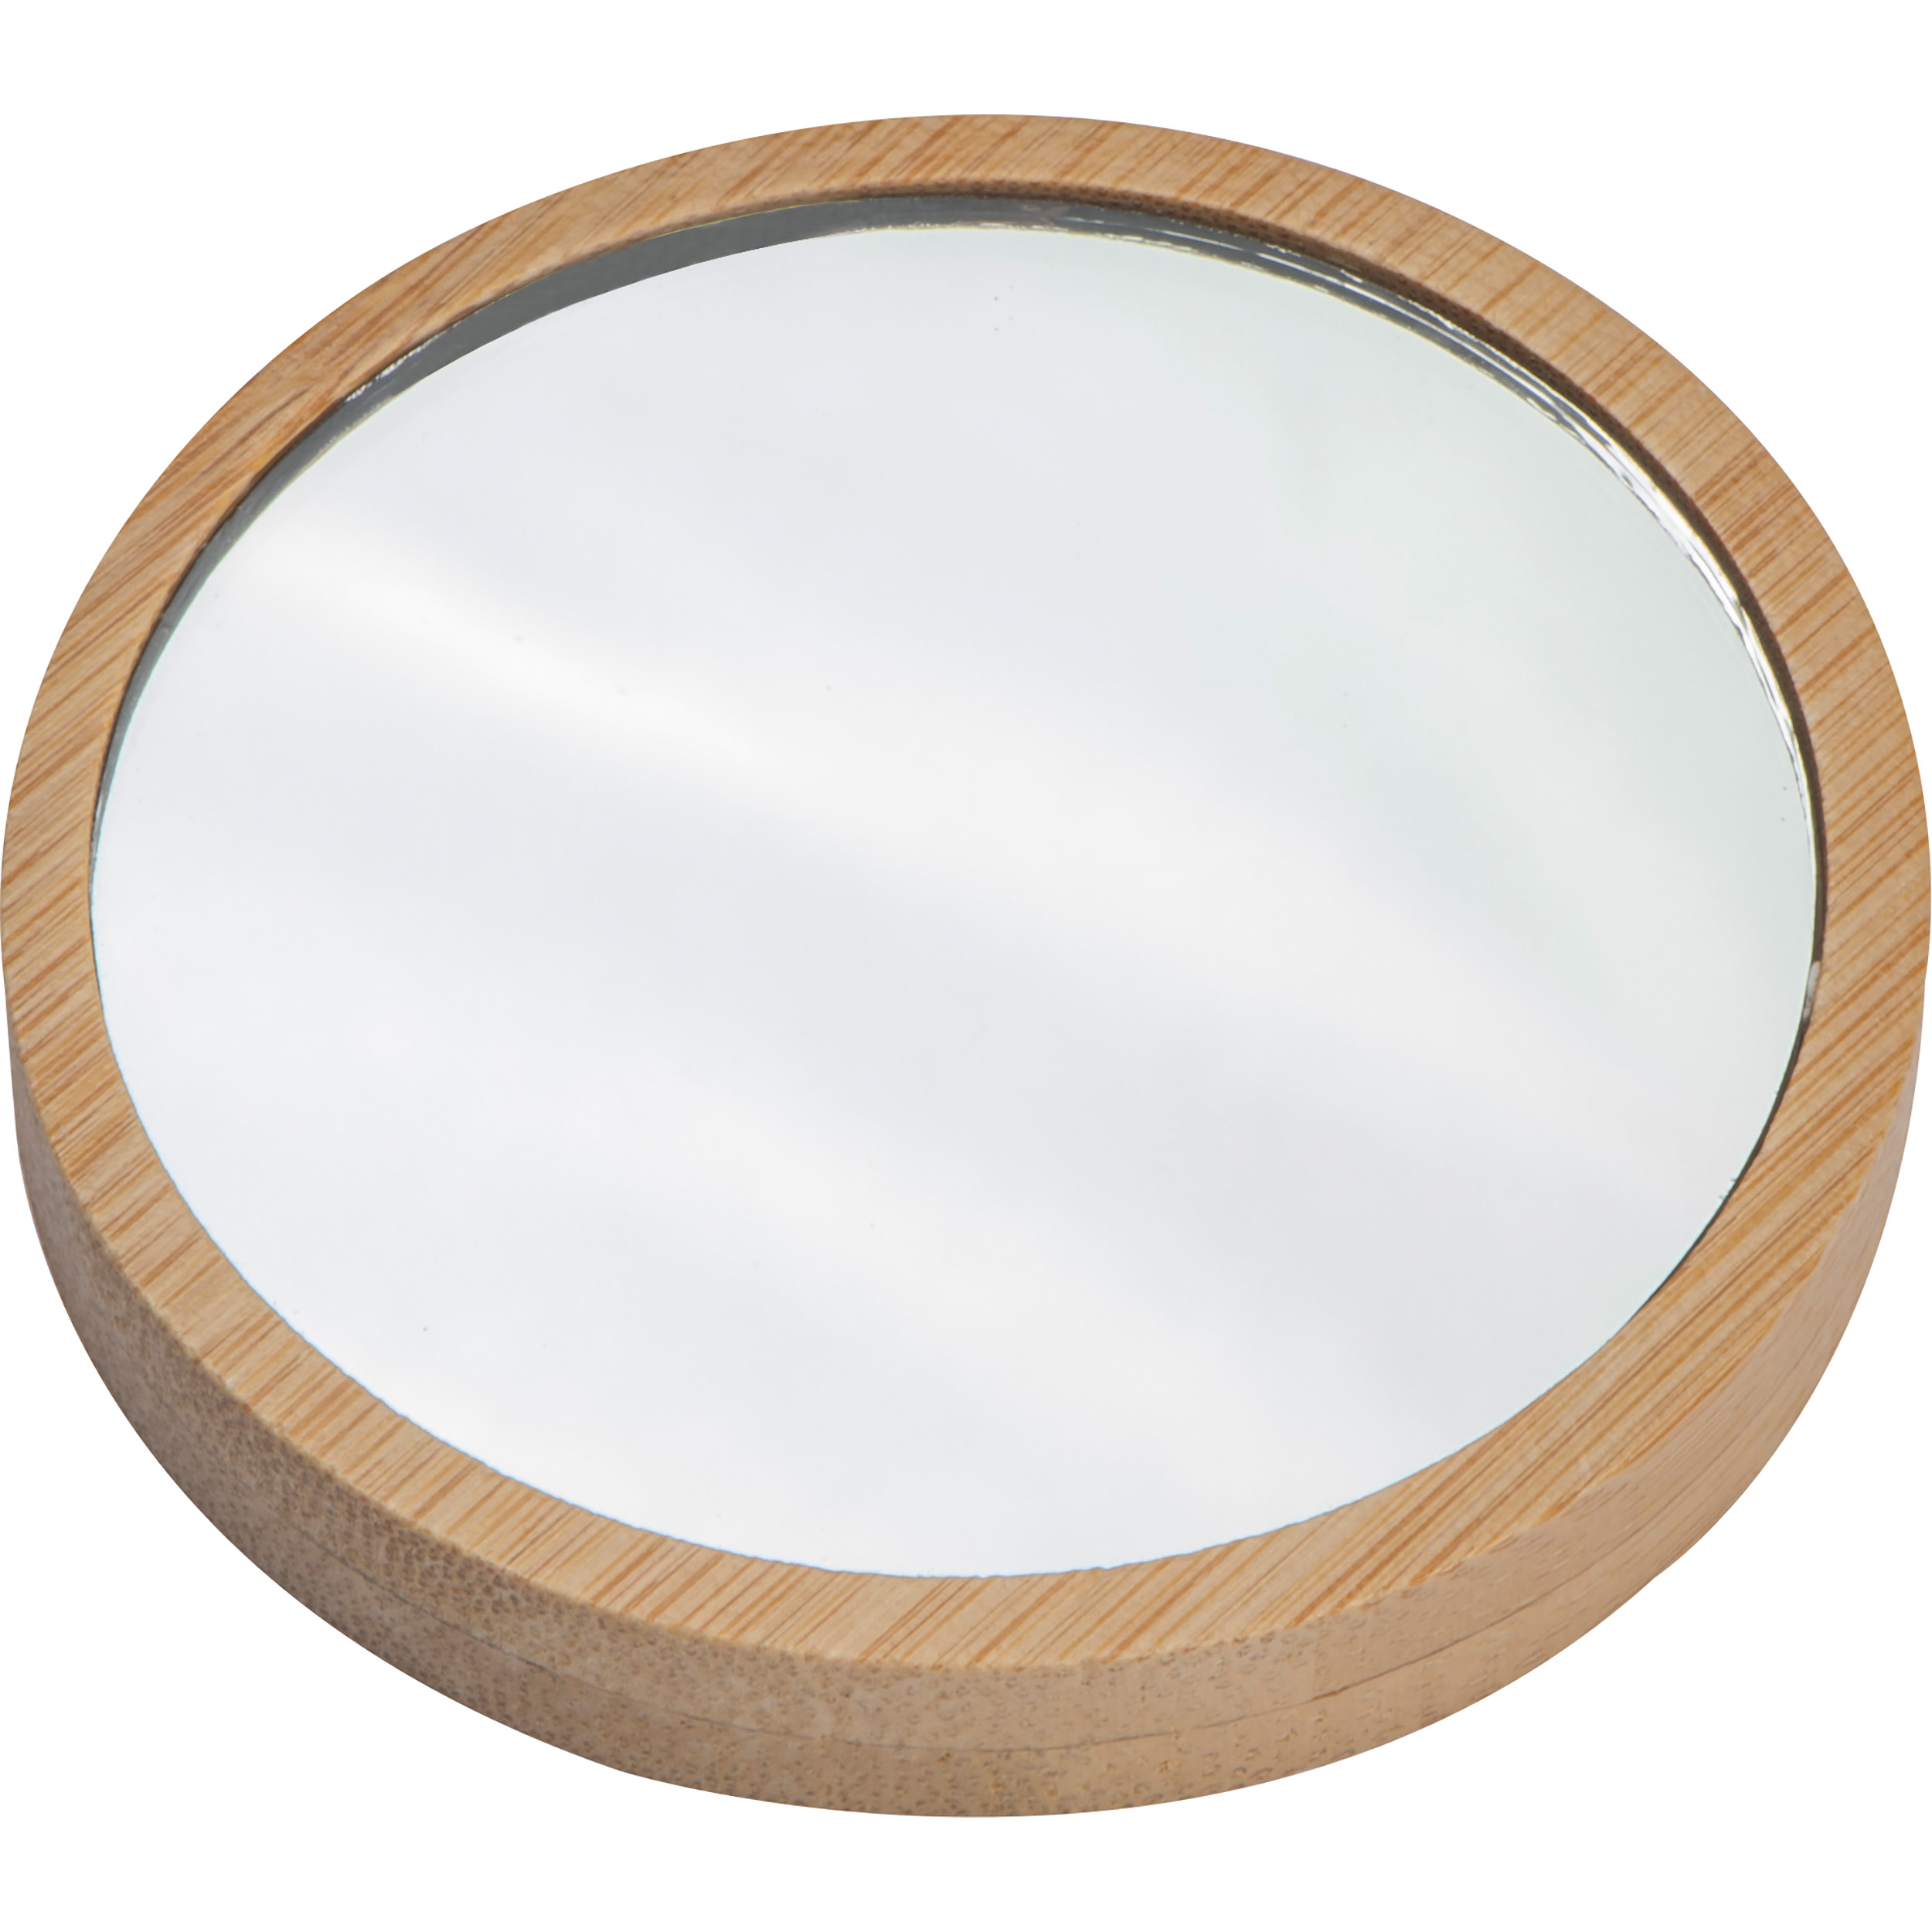 Bamboo makeup mirror